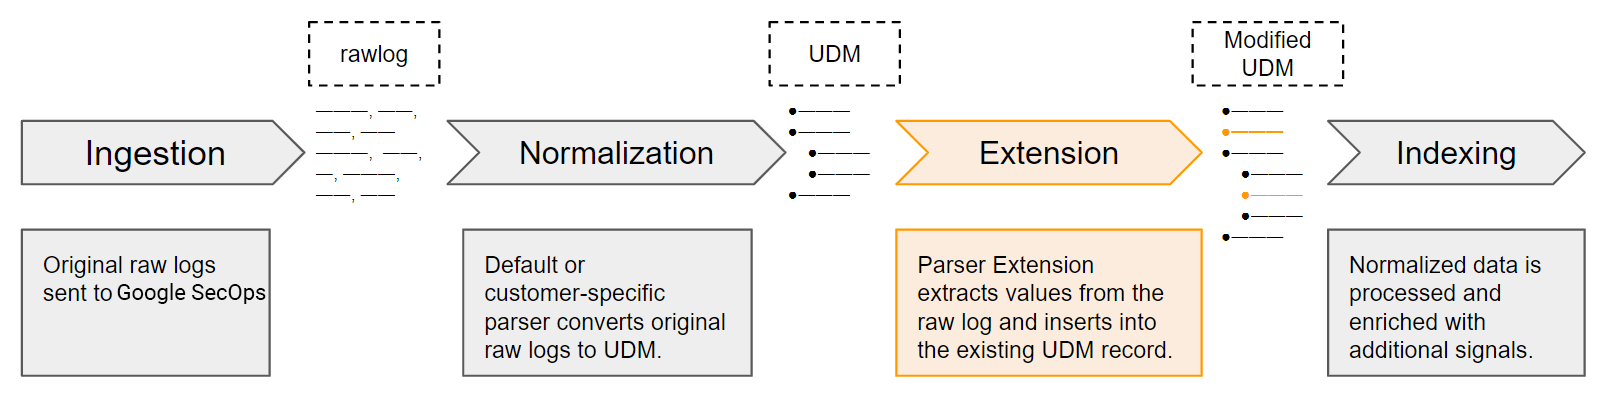 Parser extension workflow